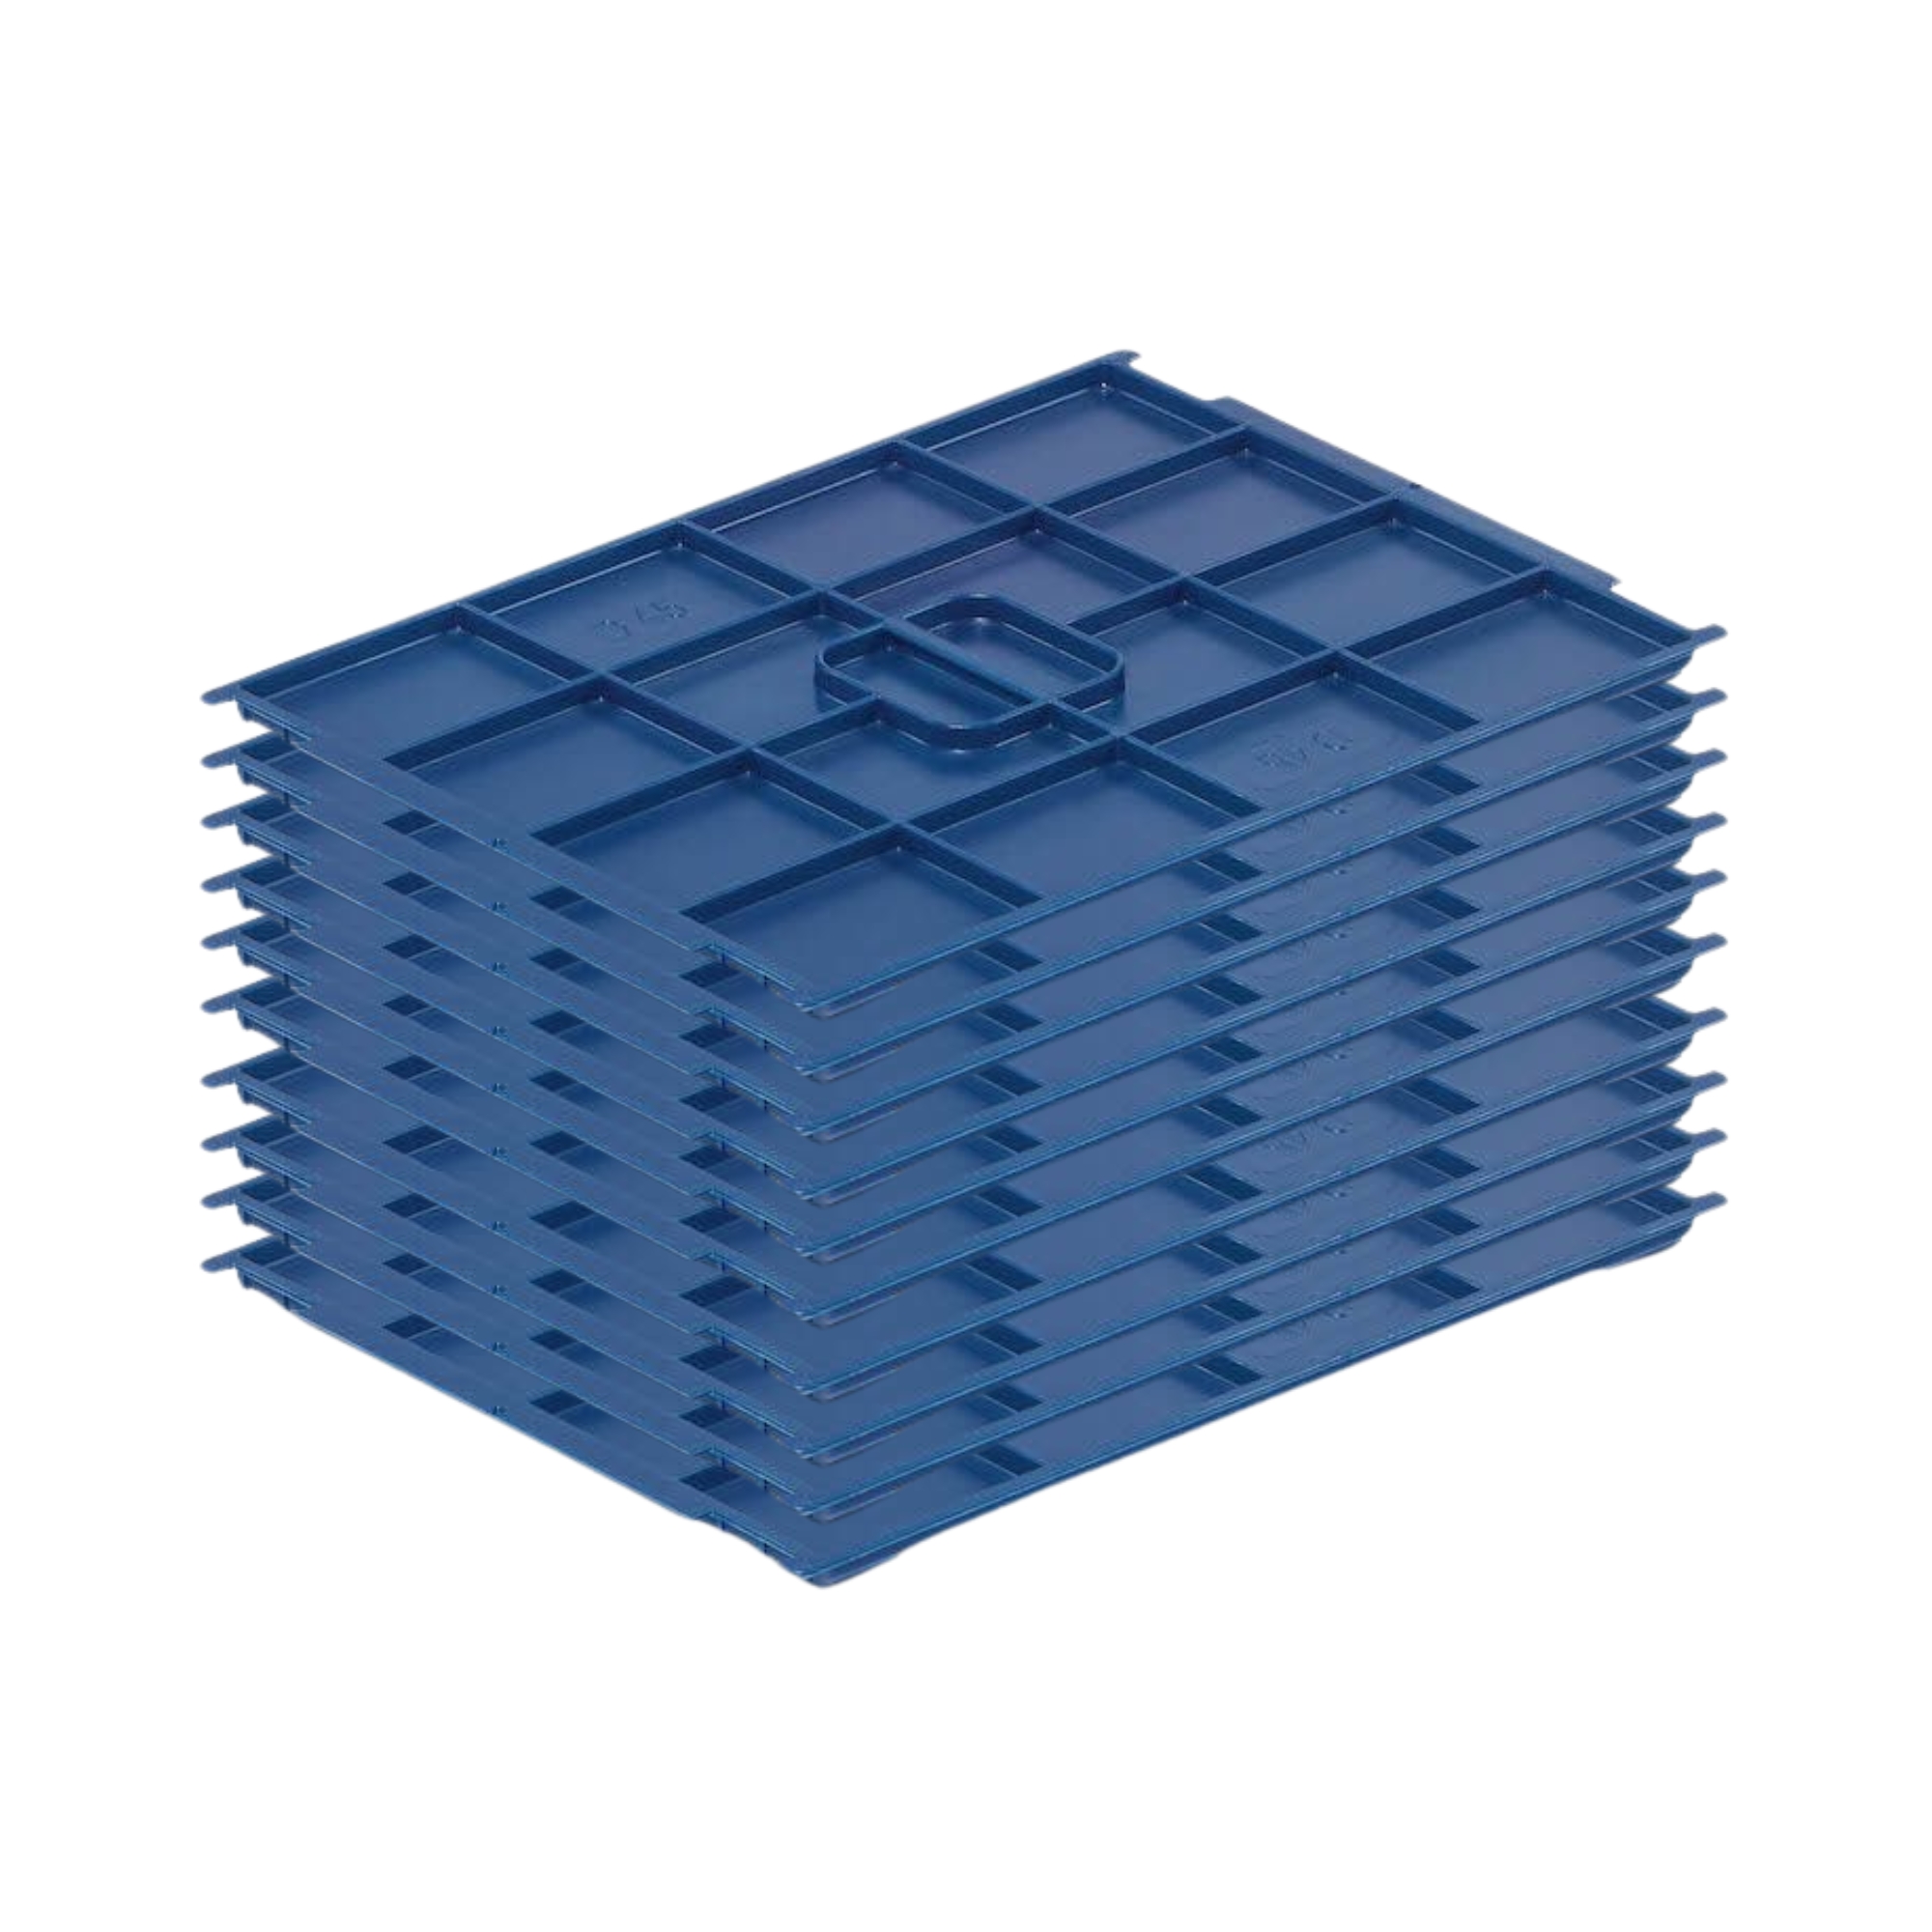 SparSet 10x Auflagedeckel für VDA KLT Kleinladungsträger mit Verbundboden | BxT 30x40cm | Abdeckung, Deckel, Plombierbar, KLT, Transportbox, Transportbehälter, Stapelbehälter